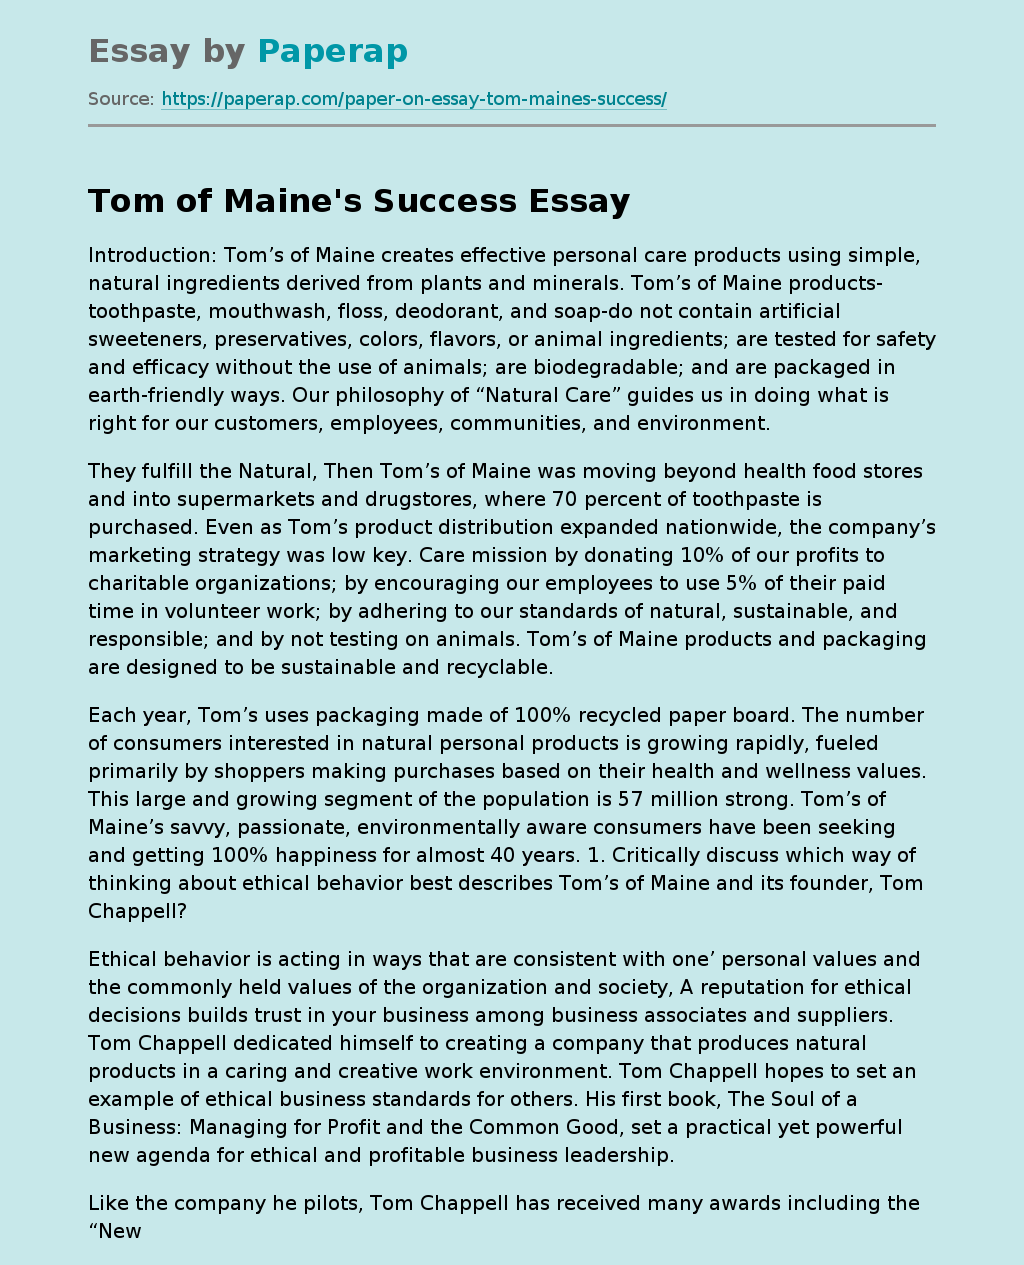 Tom of Maine's Success